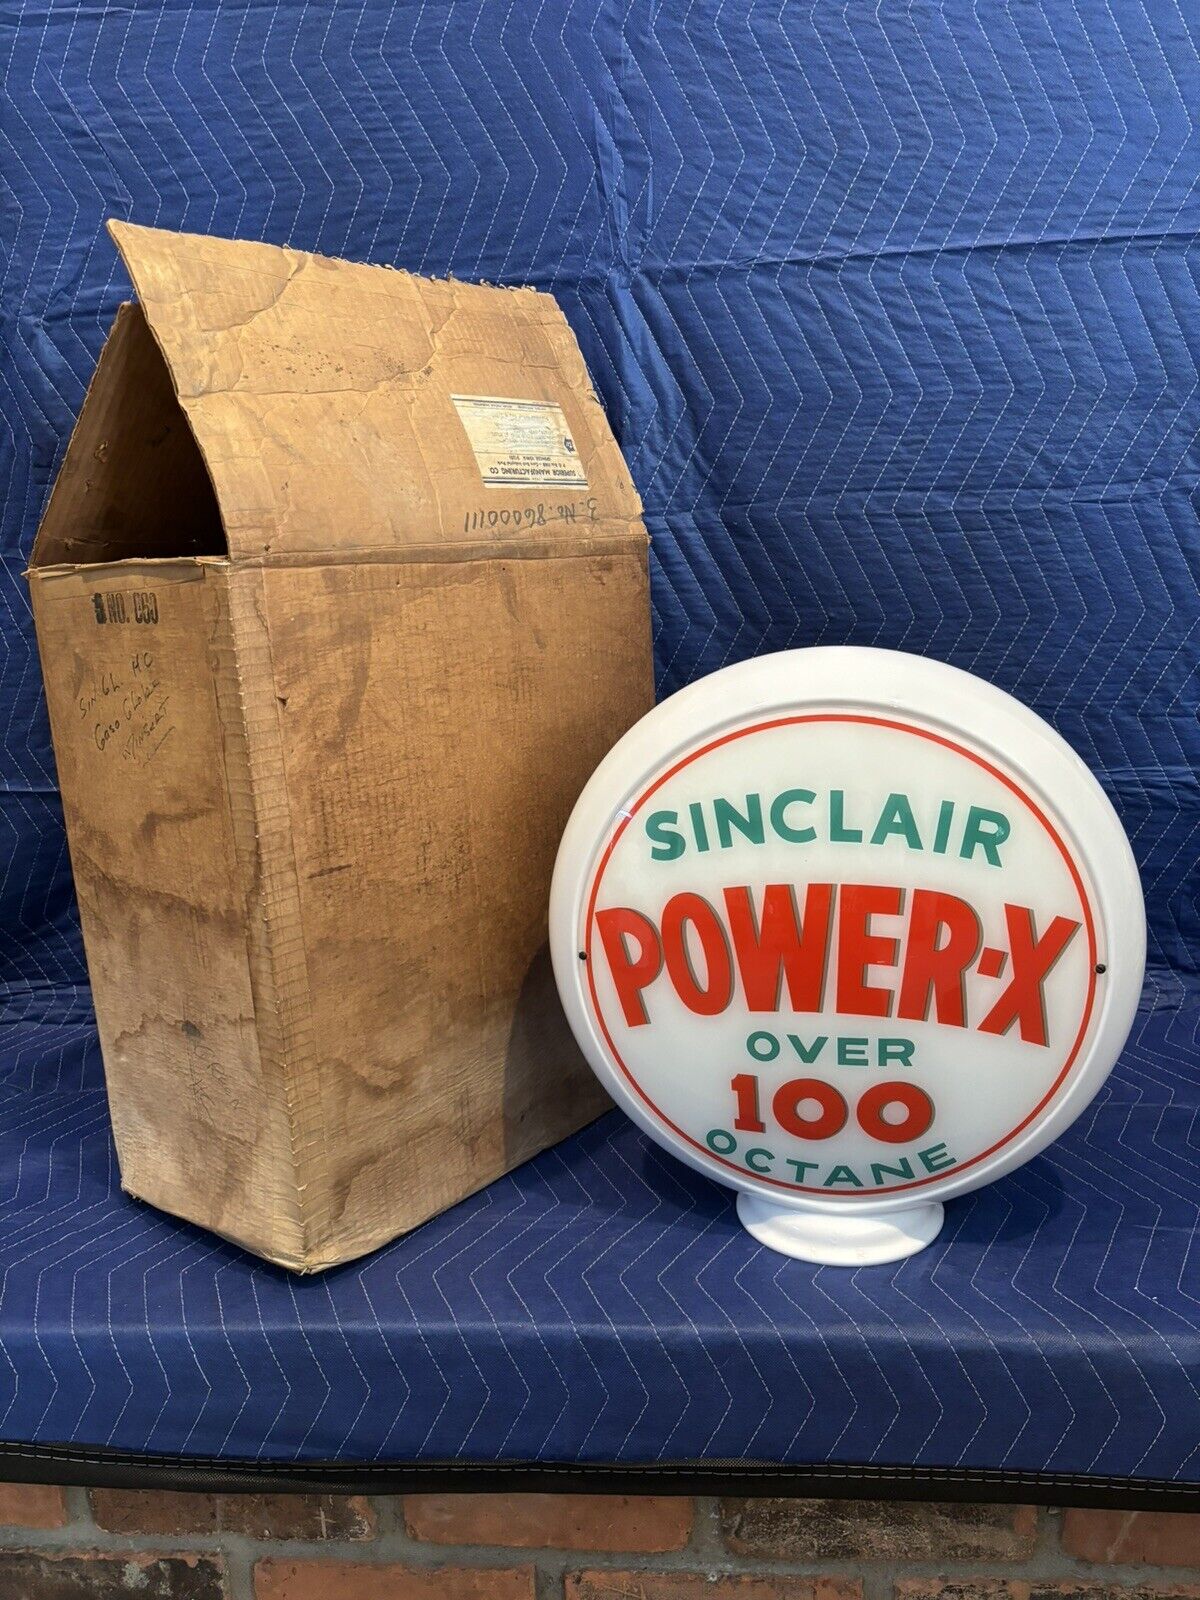 Original NOS Complete Sinclair Power-X 100 Octane Glass Body Gas Pump Globe